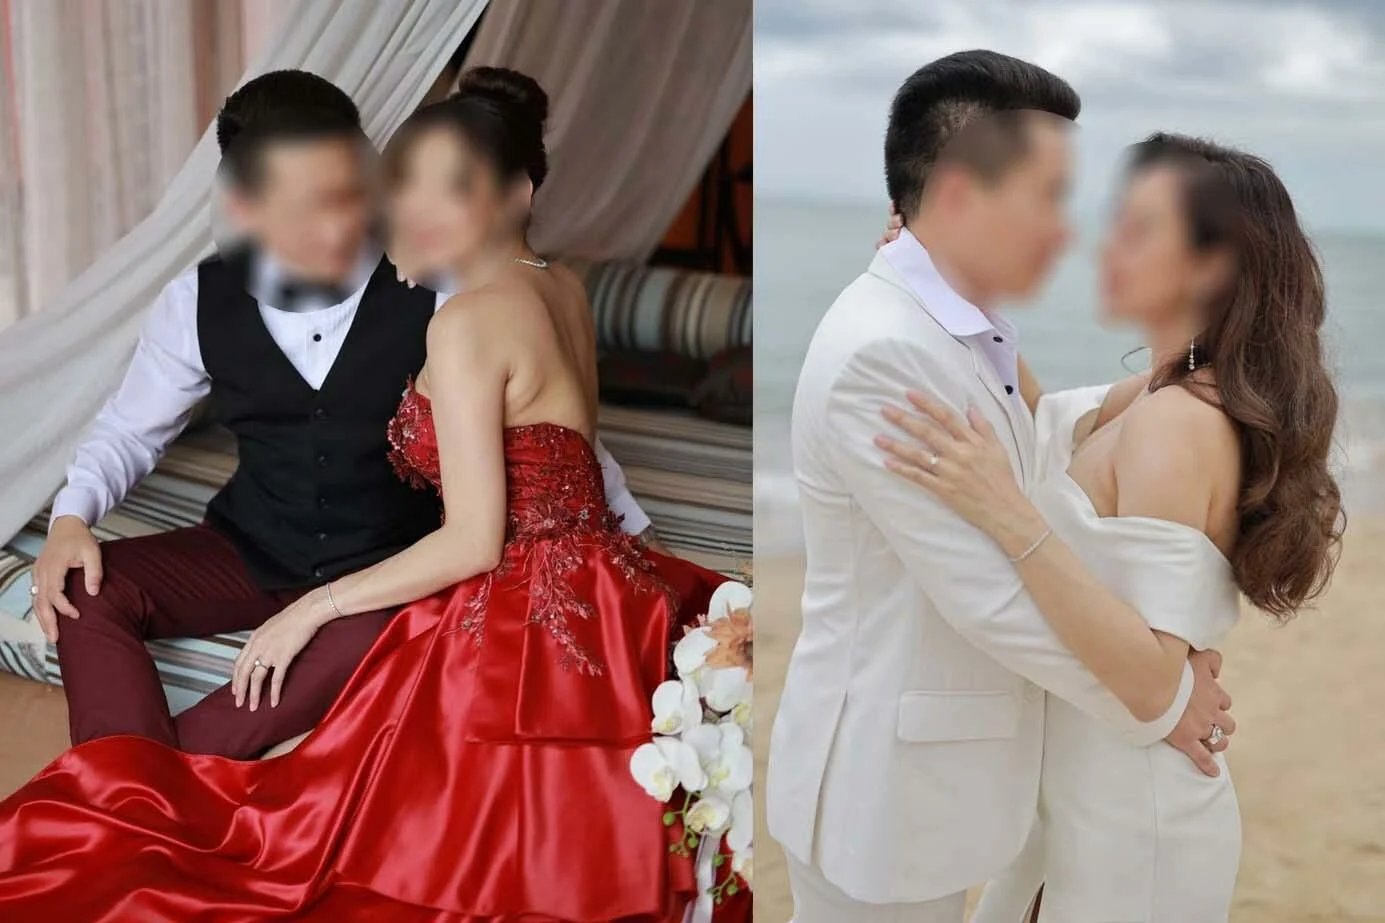 The Thaiger: китаец бросил невесту и сбежал из-за ее беременности девочкой